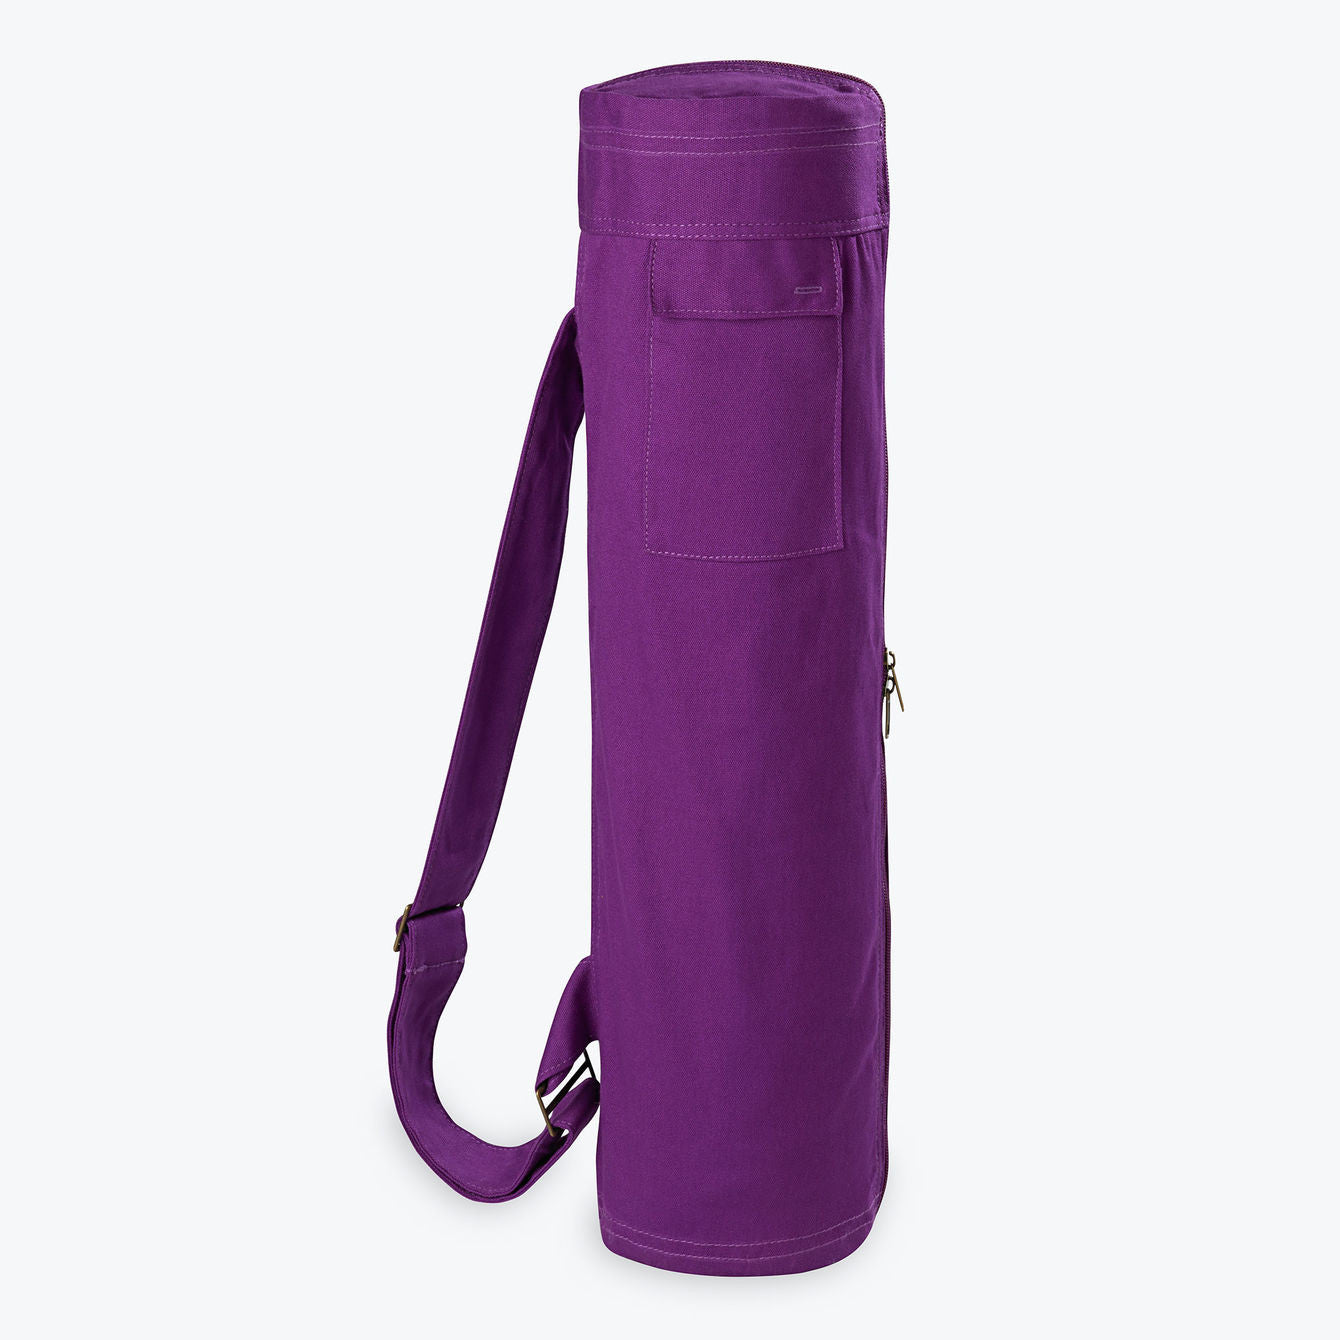 Gaiam Metro Gym Yoga Mat Bag PURPLE Tote Travel Bag 12x14x5.5